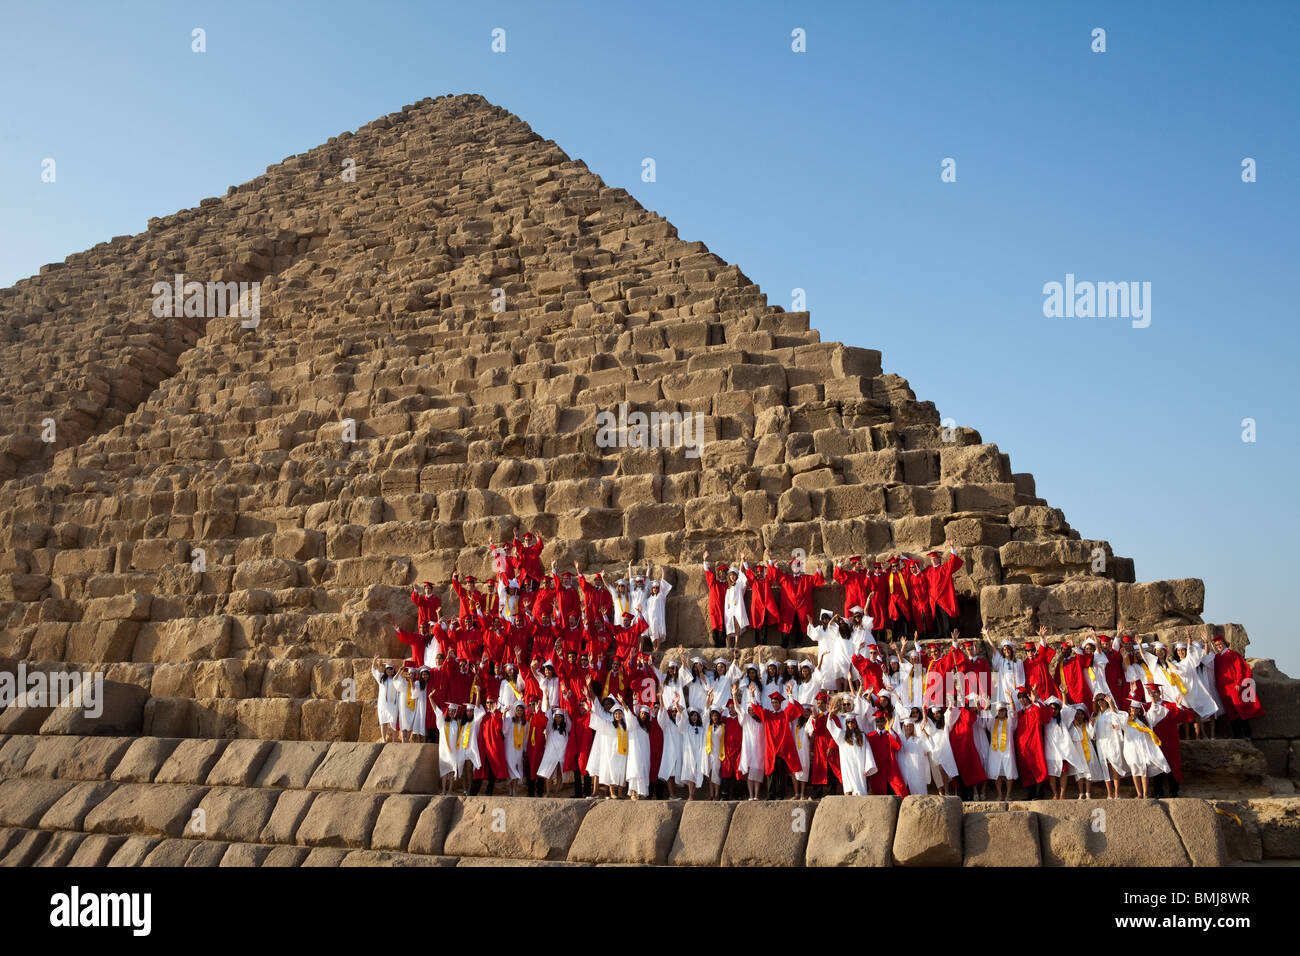 Classe de 2010 Cairo American College (CAC) l'obtention du diplôme qui posent sur la pyramide de Mykérinos, Gizeh, Le Caire, Égypte. Banque D'Images